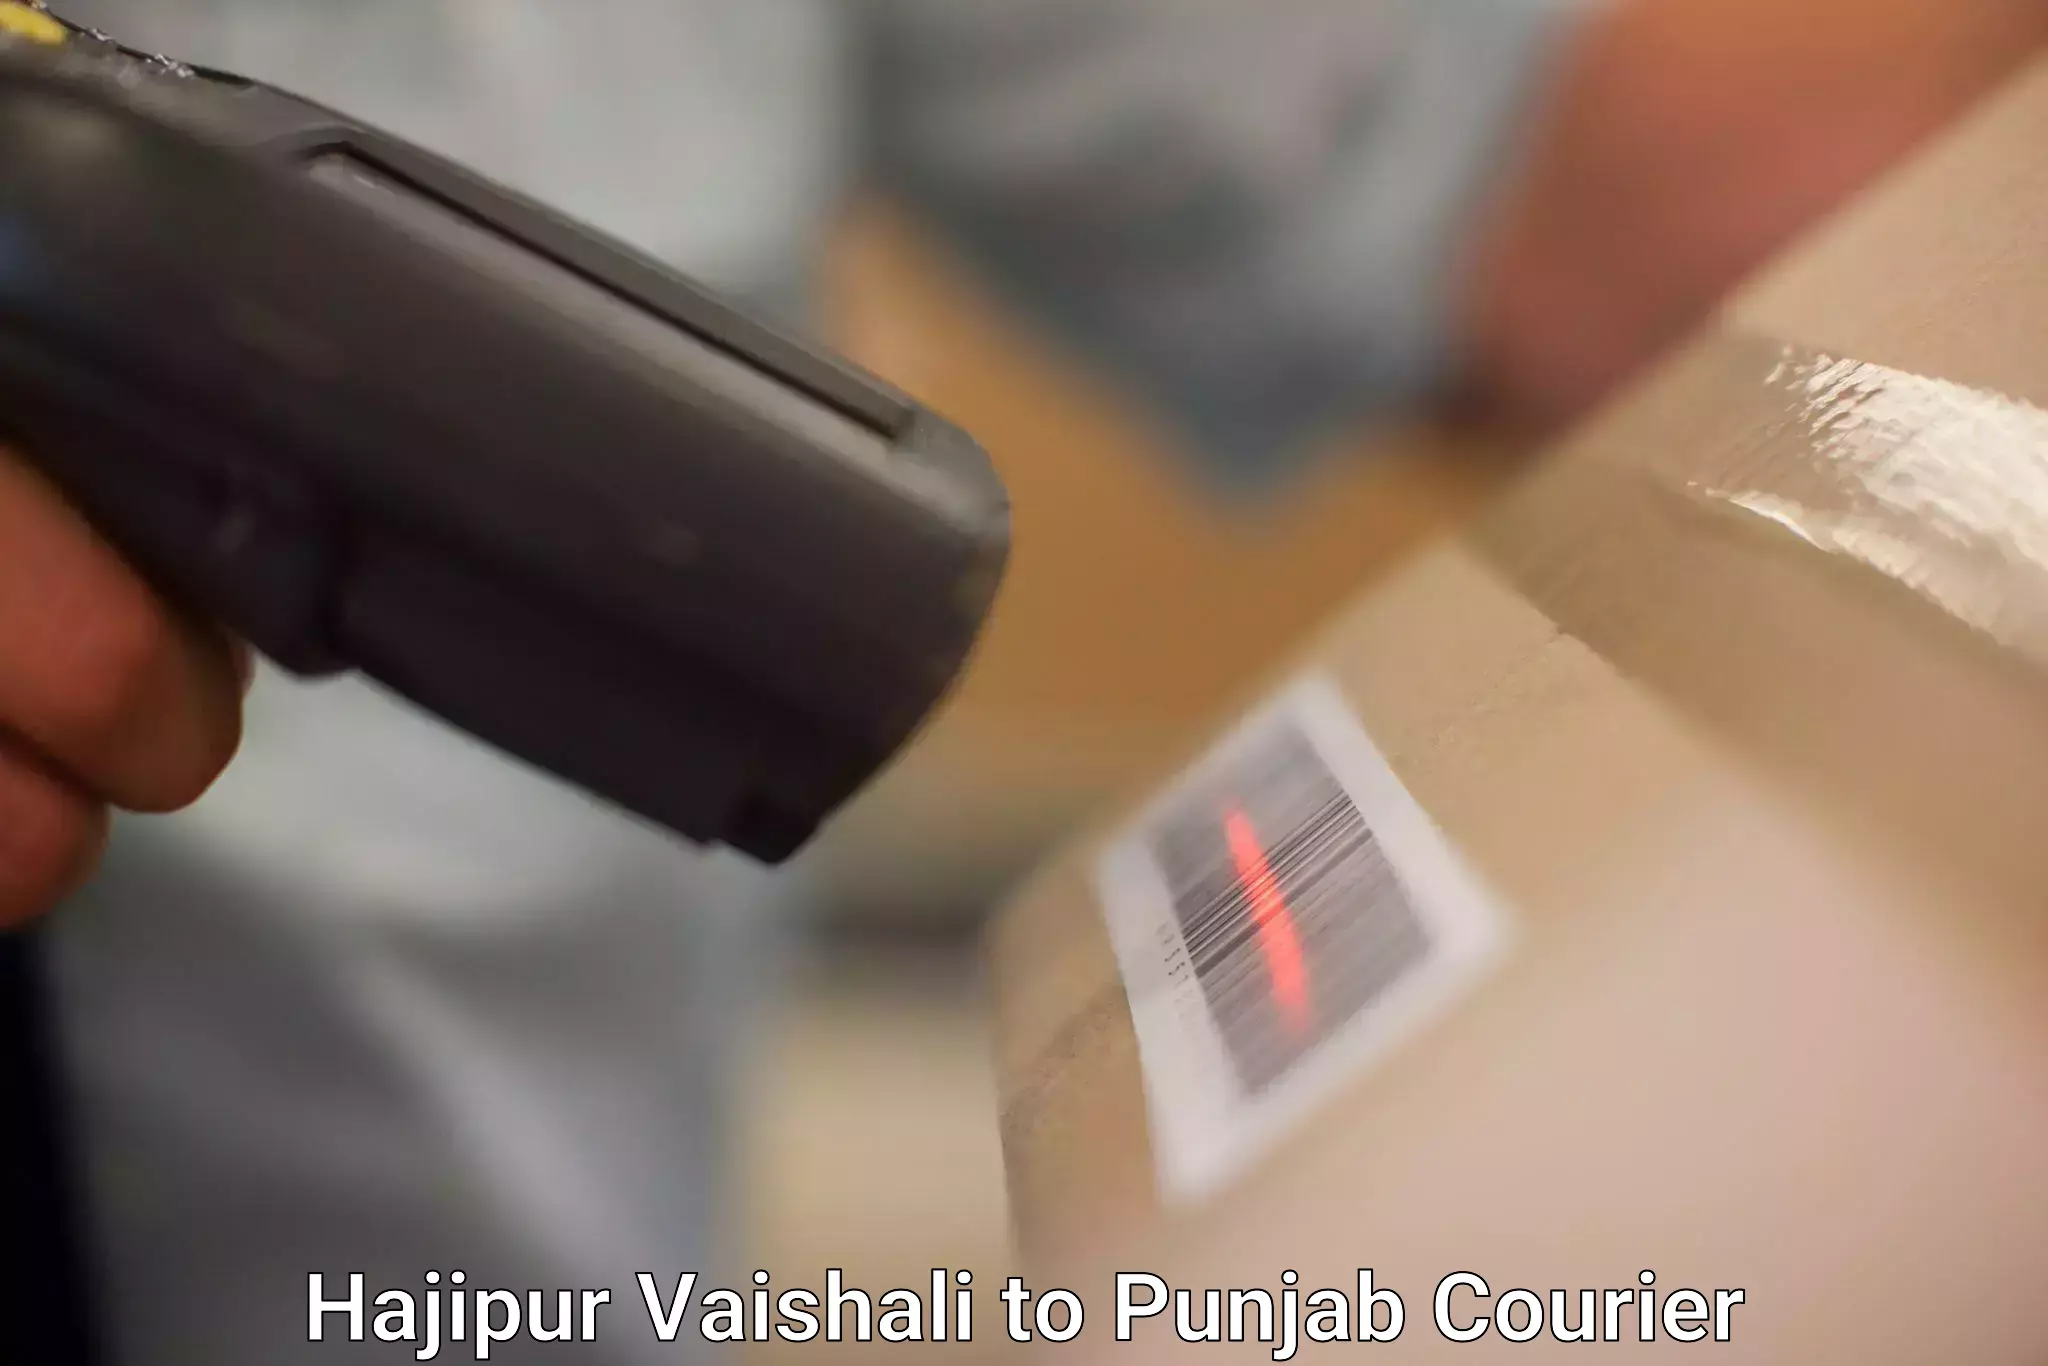 Efficient parcel service Hajipur Vaishali to Anandpur Sahib